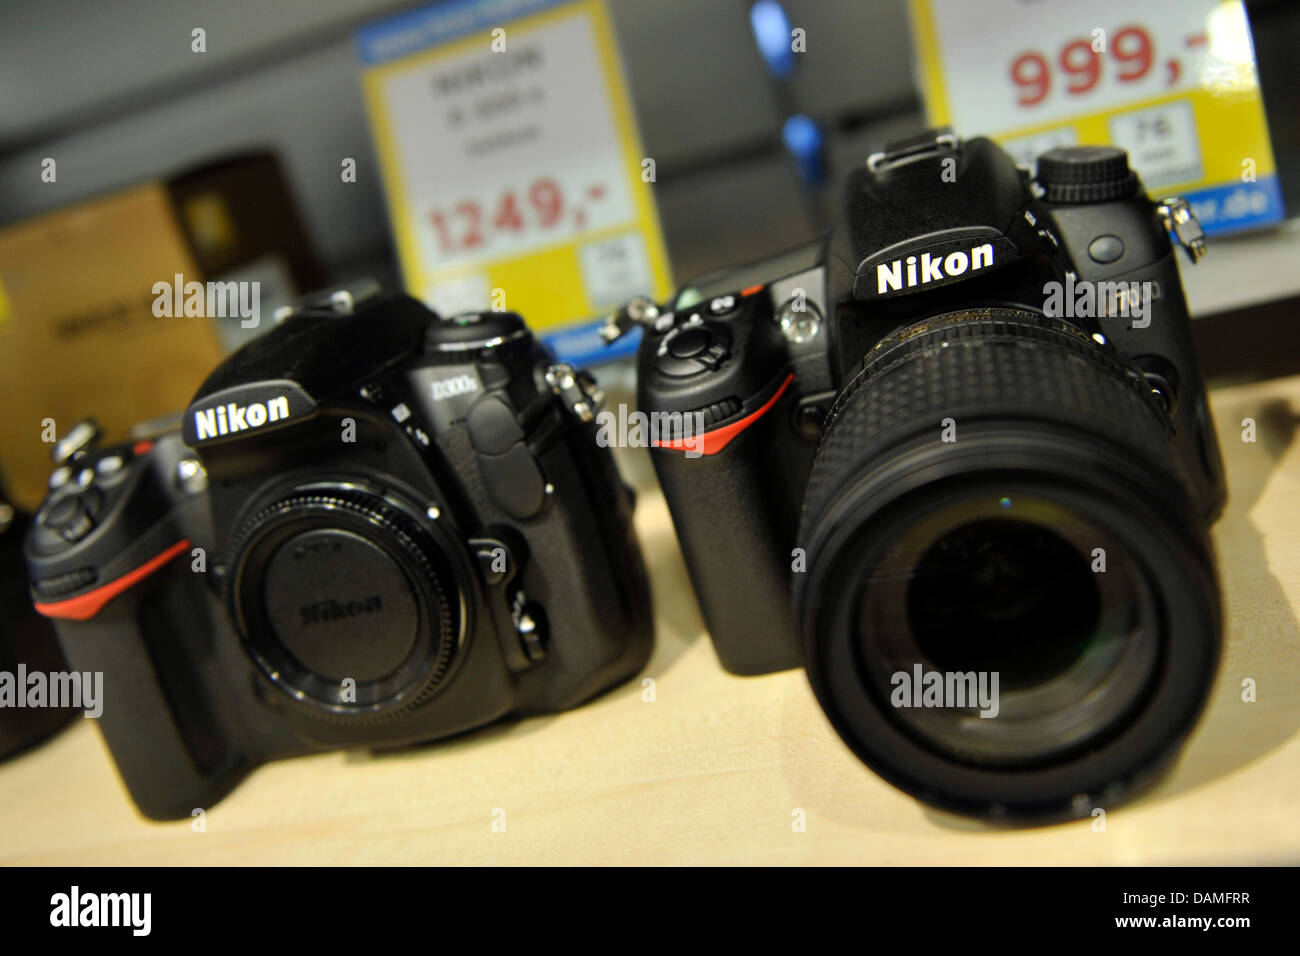 Las cámaras Nikon están en exhibición en un estante en una tienda de  fotografía en Bochum, Alemania, 24 de mayo de 2011. El impacto económico de  la catástrofe nuclear en Japón se